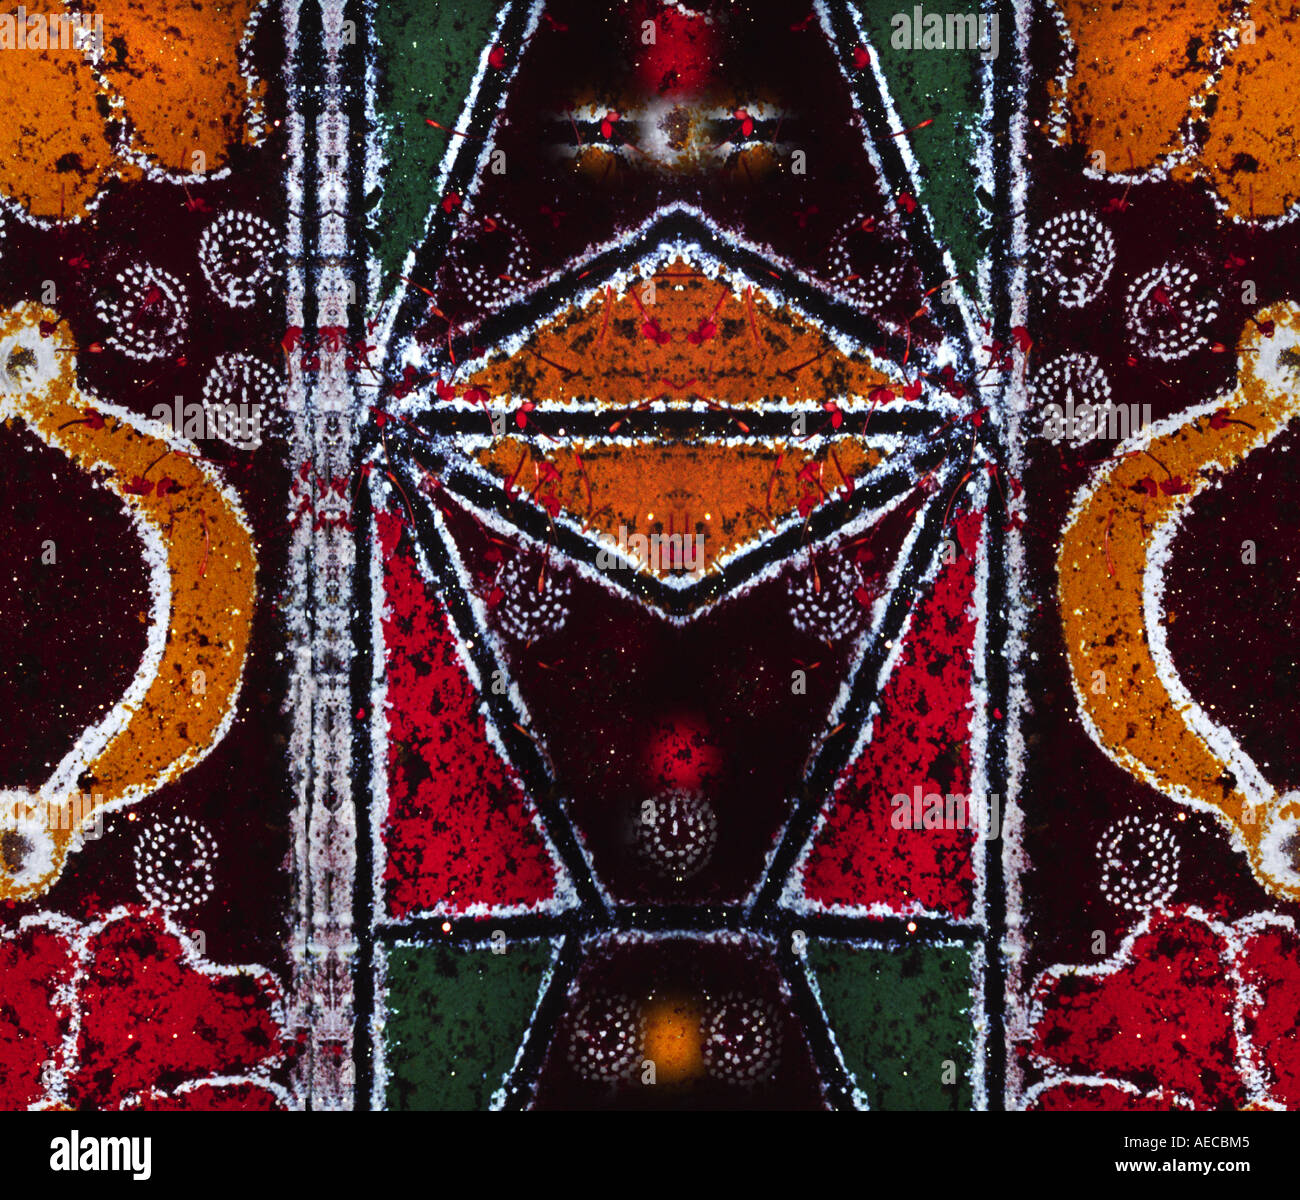 Eine abstrakte Komposition, schoss aus der Kalam, eine bunte Zeichnung gemacht auf dem Boden von Kerala, Indien Stockfoto